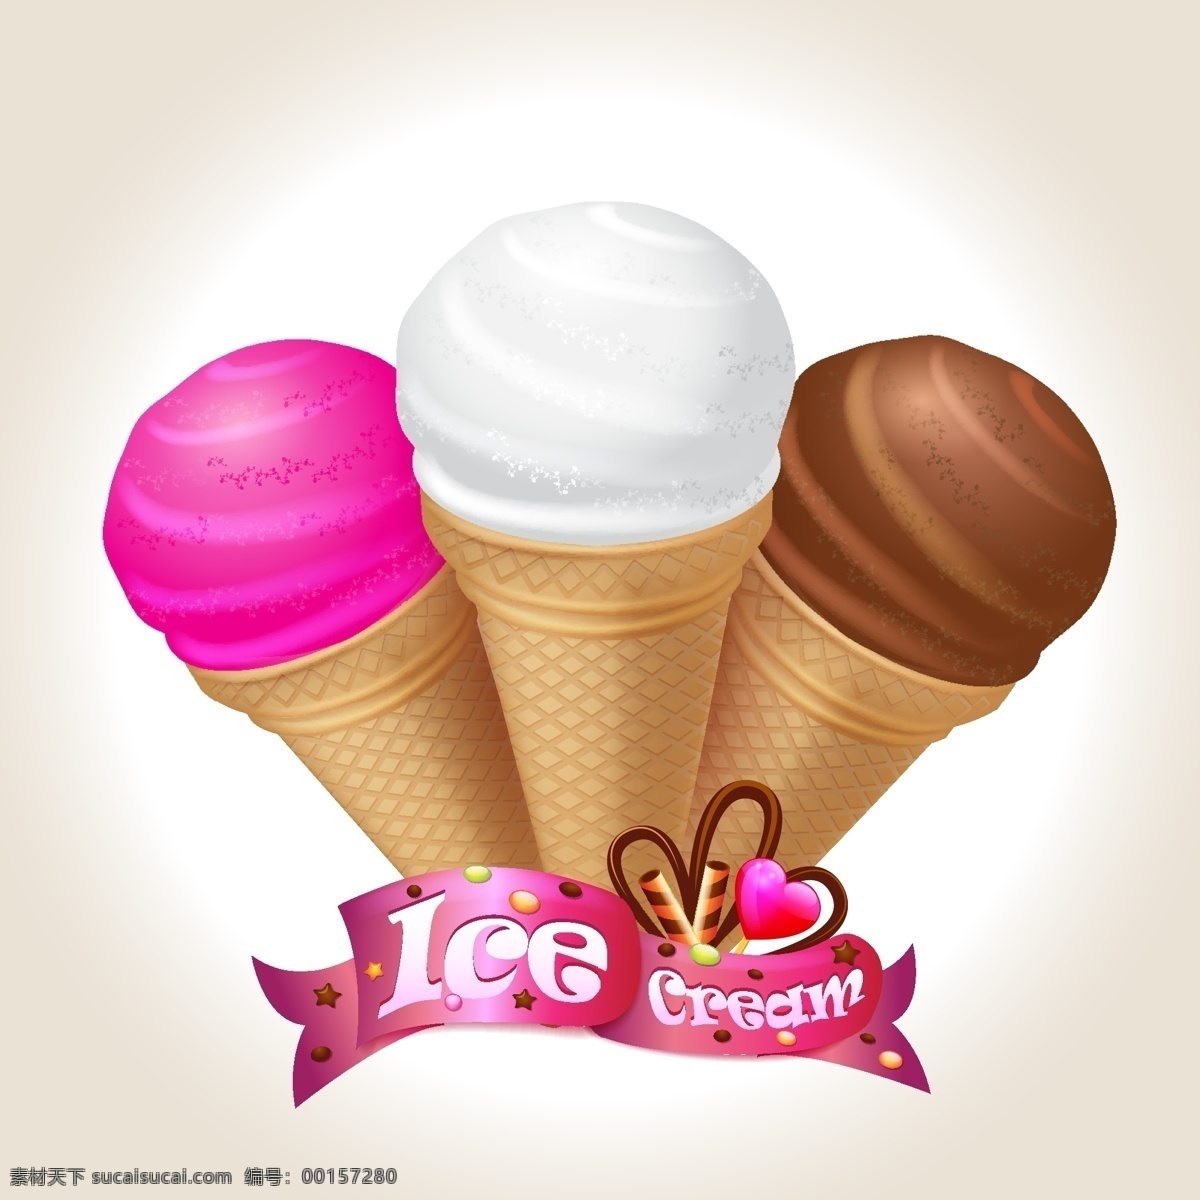 可爱 冰淇淋 矢量图 奶油 矢量食物 psd冰淇淋 日常生活